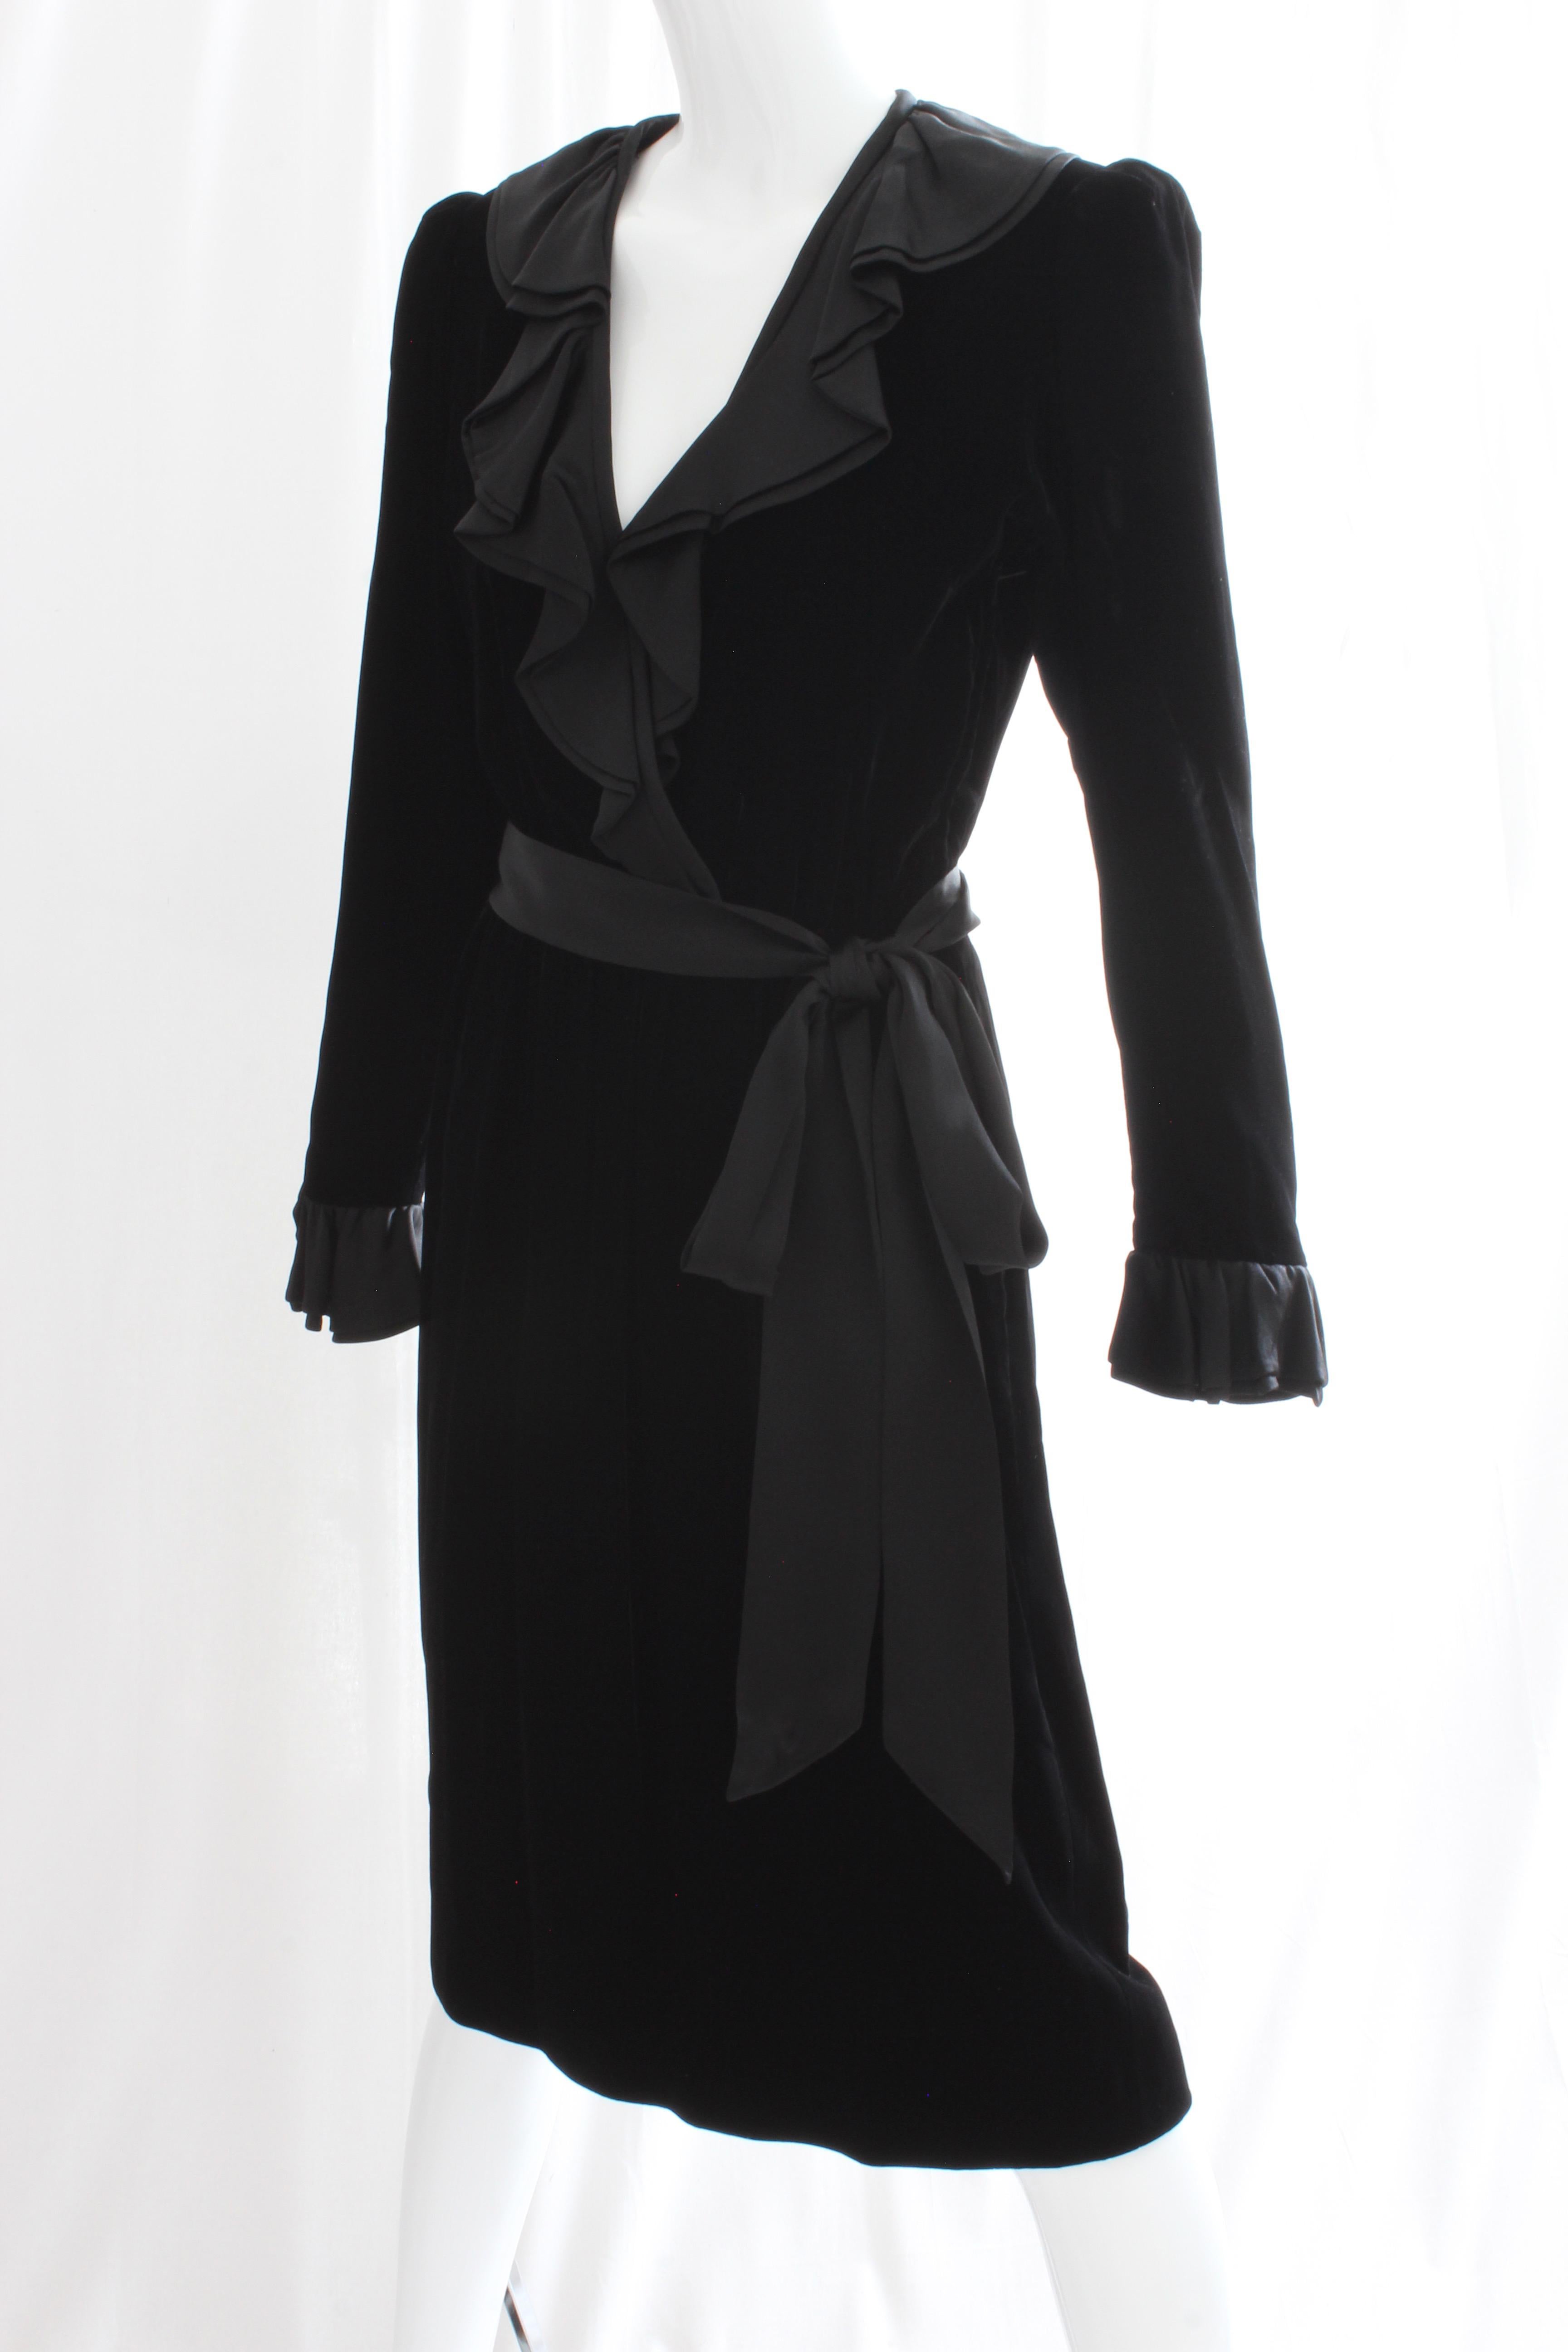 Yves Saint Laurent Cocktail Dress with Ruffles YSL Black Silk Velvet 1970s 1